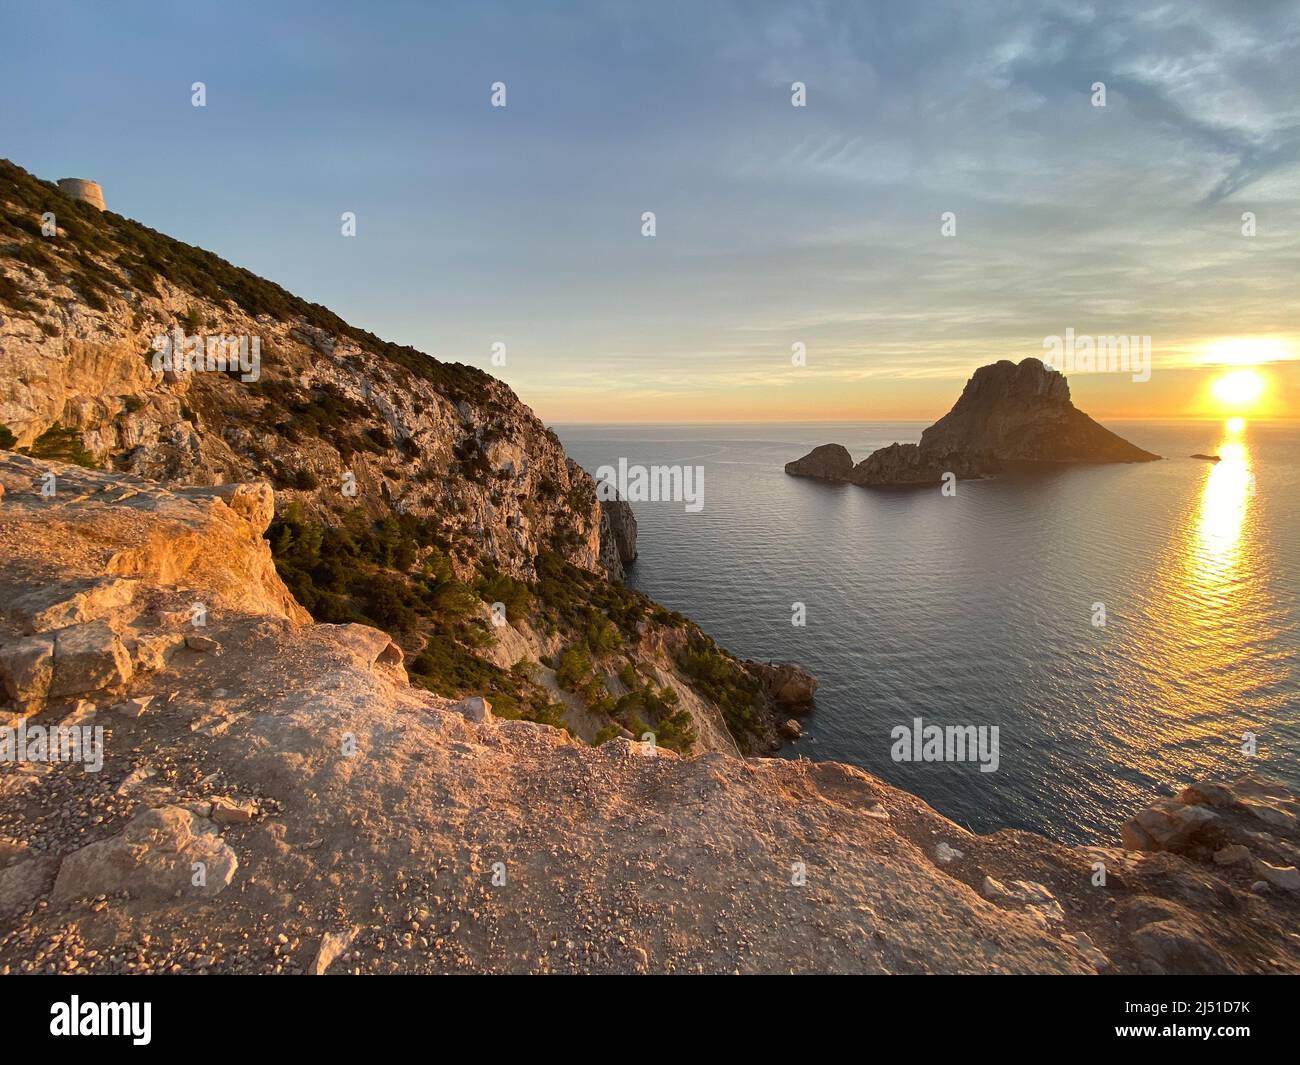 Tramonto sulla costa dell'isola di Ibiza con es Vedra Foto Stock